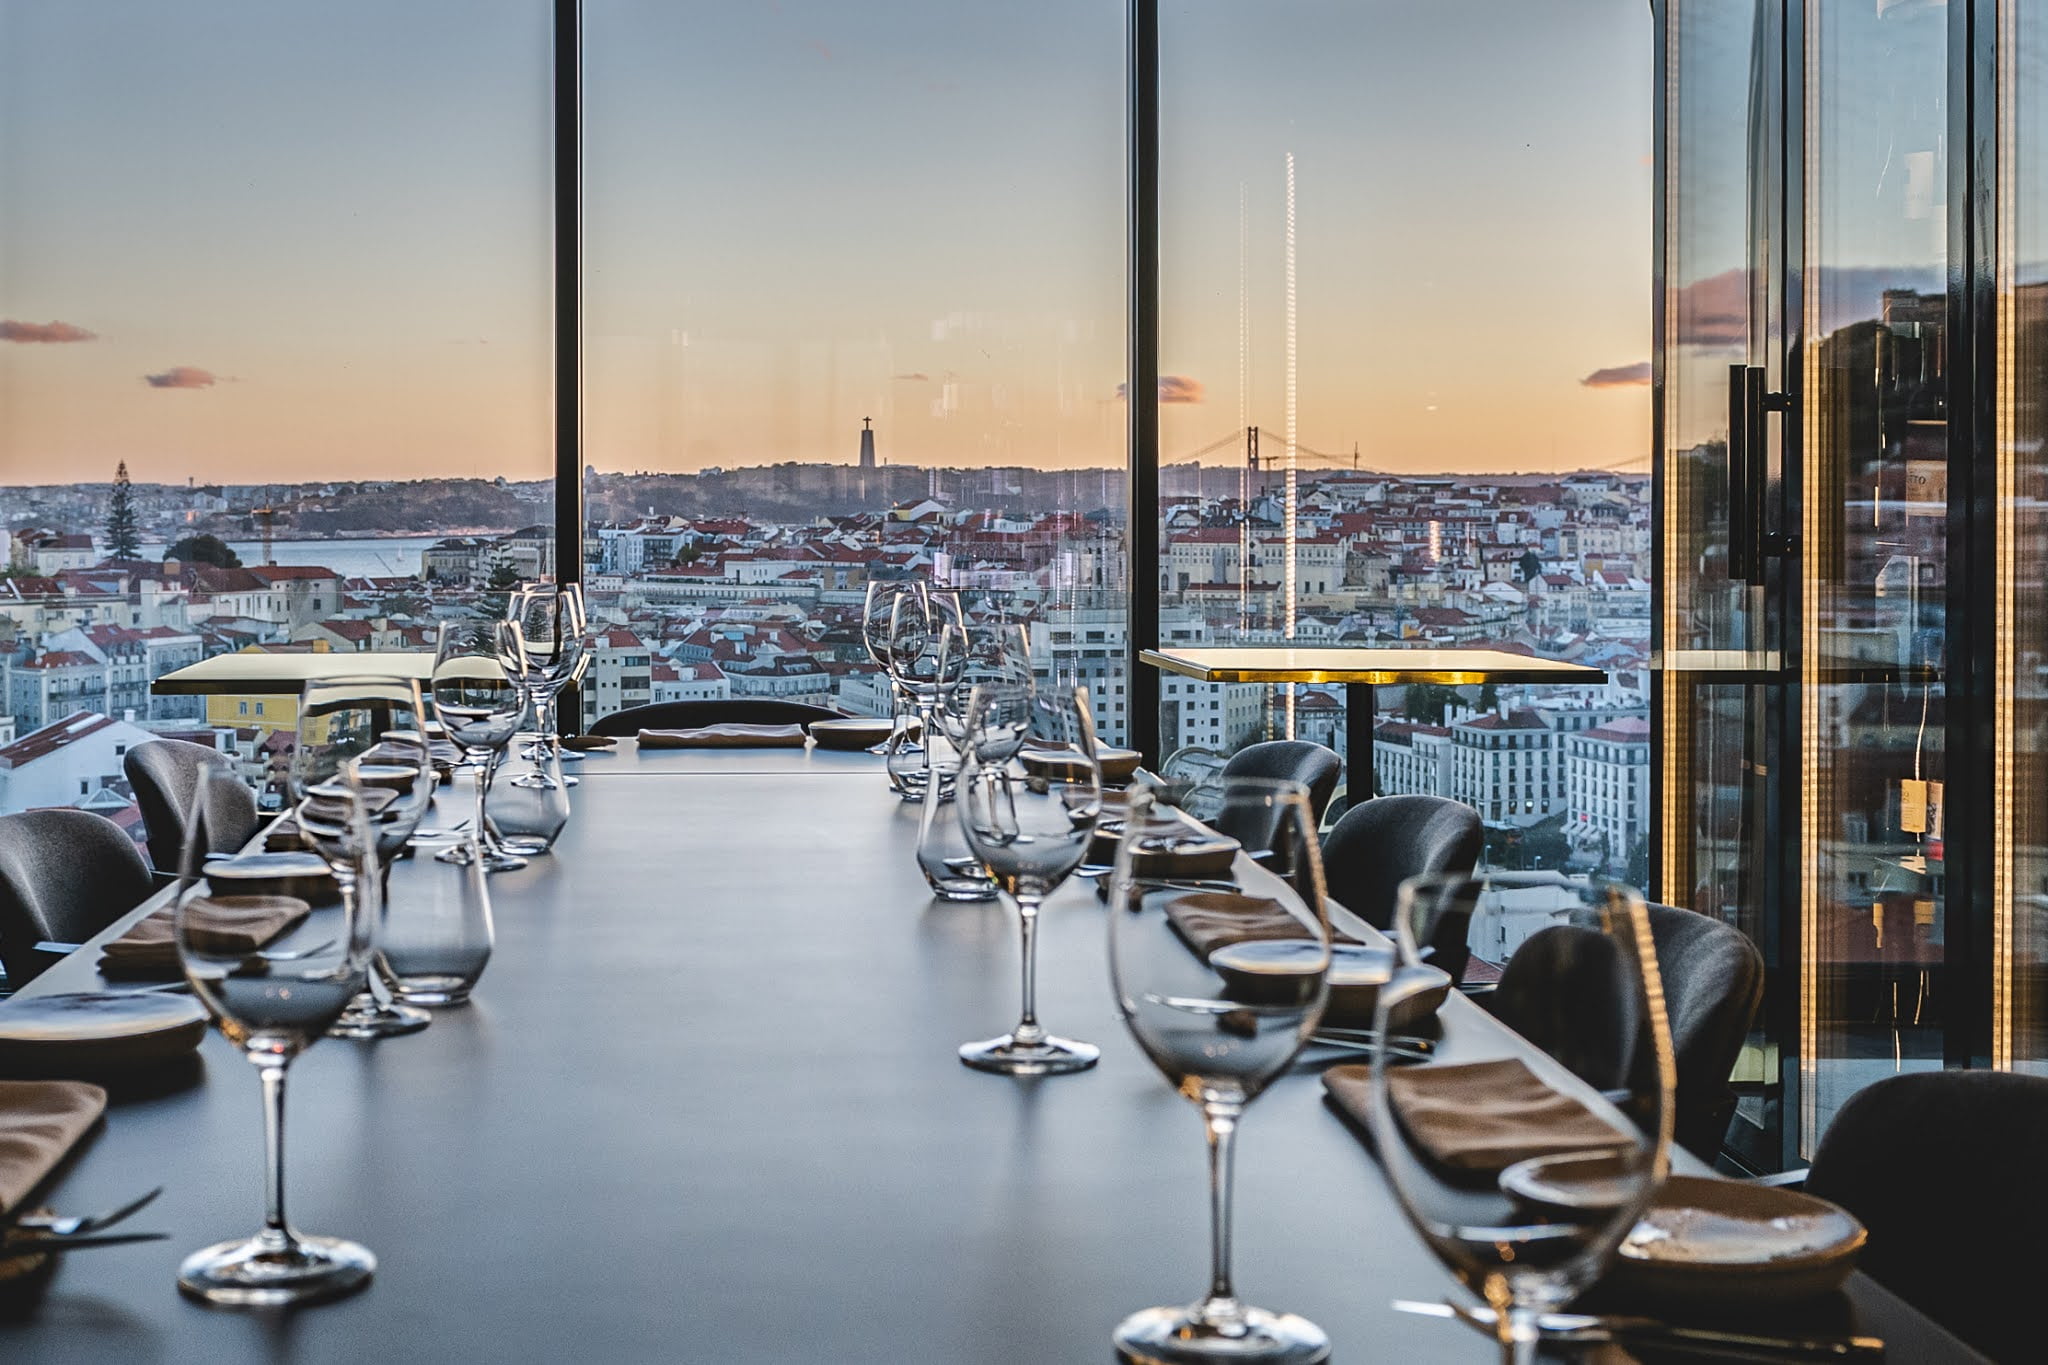 Vista magnifica sobre a cidade de Lisboa, vista do interior da sala de refeições do restaurante através de uma janela.